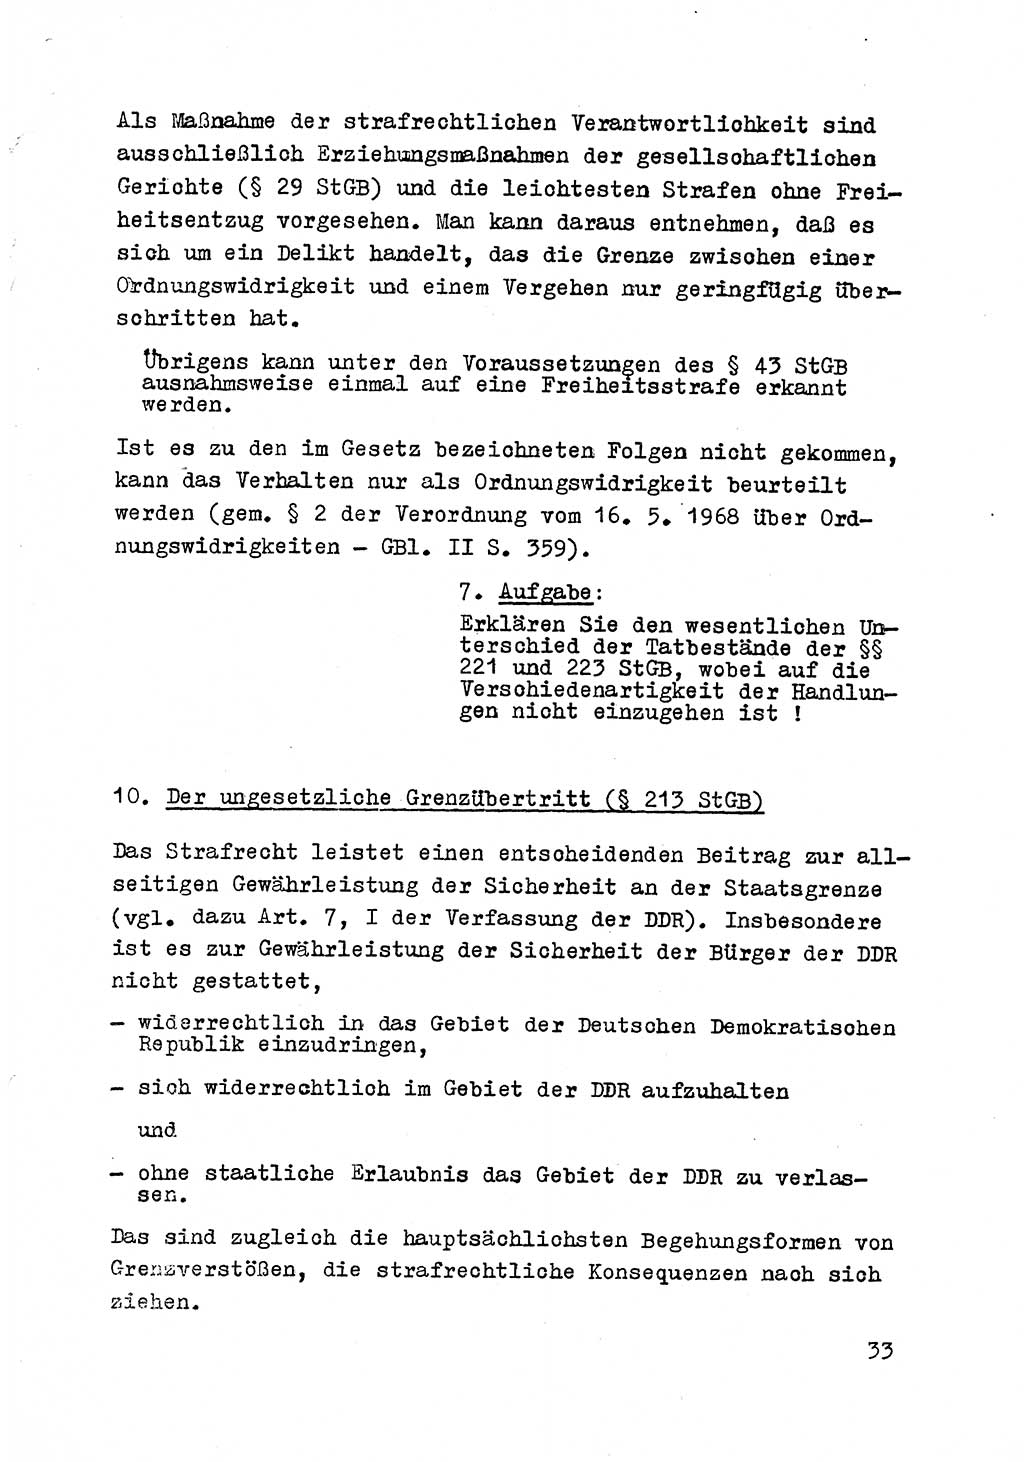 Strafrecht der DDR (Deutsche Demokratische Republik), Besonderer Teil, Lehrmaterial, Heft 8 1970, Seite 33 (Strafr. DDR BT Lehrmat. H. 8 1970, S. 33)